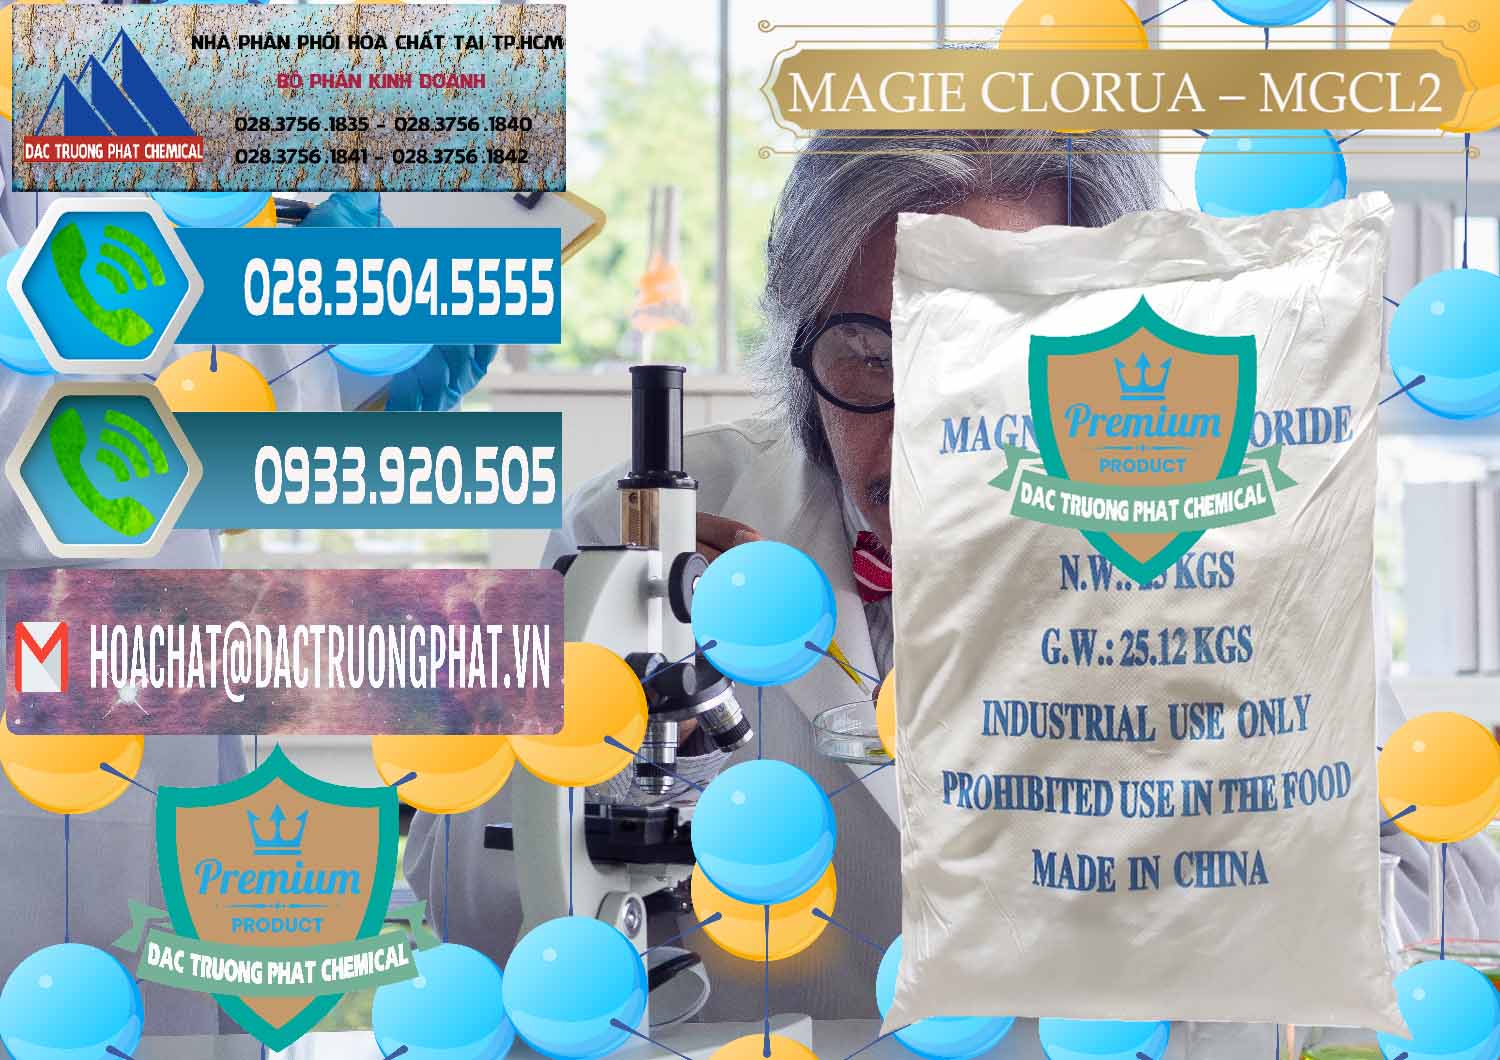 Kinh doanh _ bán Magie Clorua – MGCL2 96% Dạng Vảy Trung Quốc China - 0091 - Chuyên kinh doanh ( phân phối ) hóa chất tại TP.HCM - congtyhoachat.net